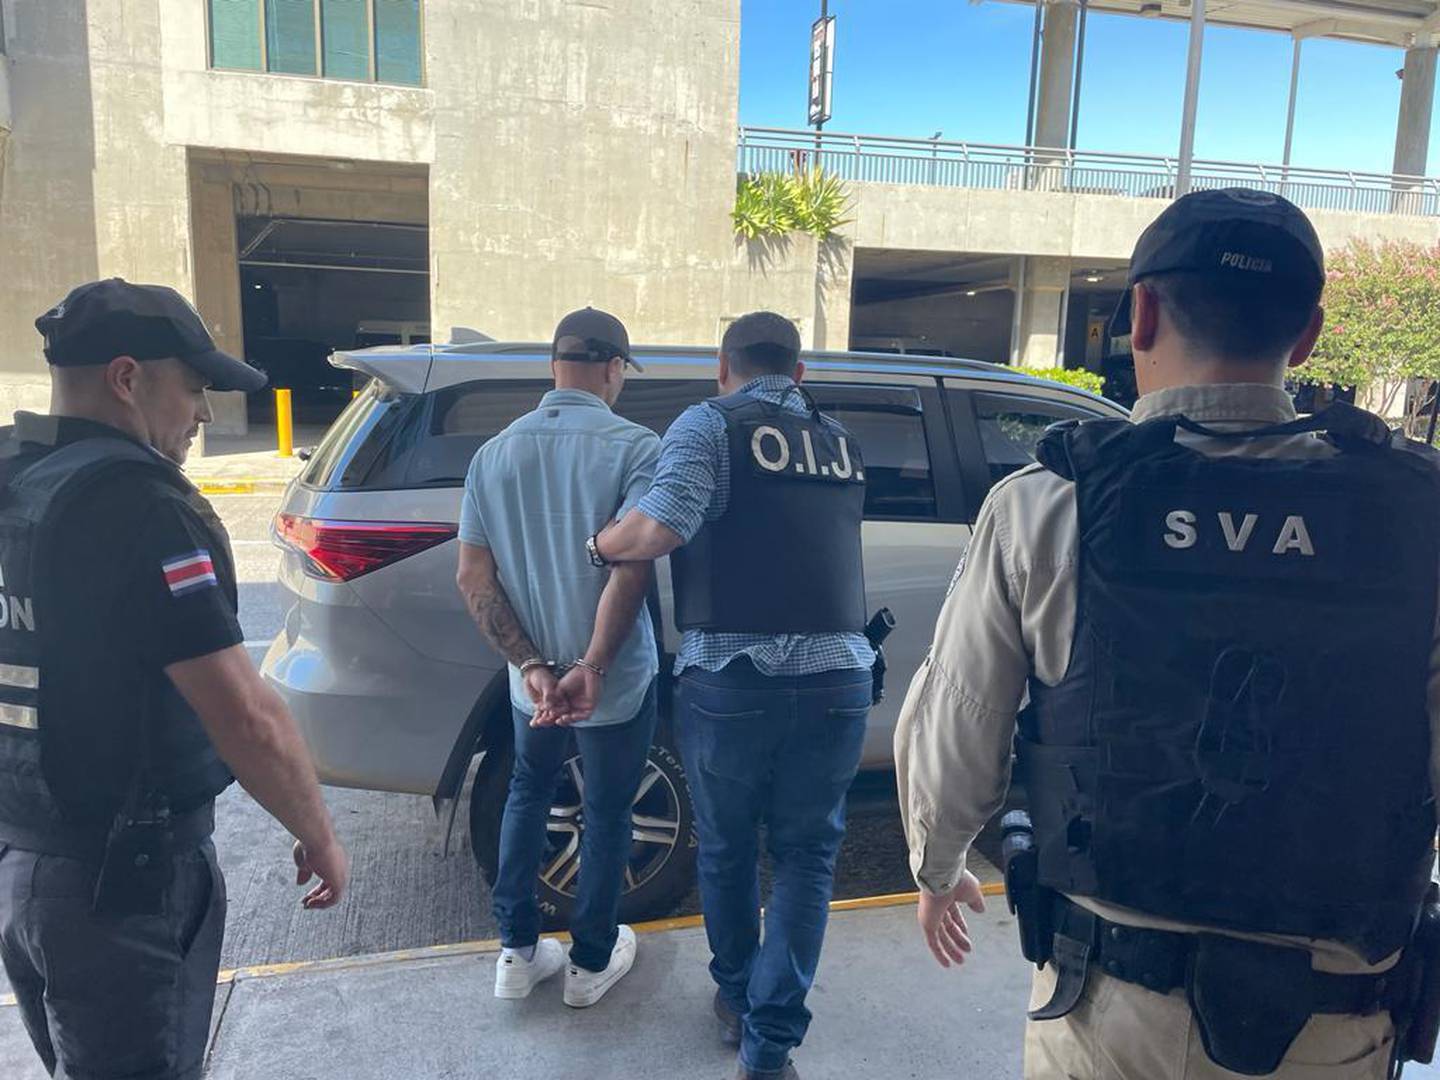 Solano fue detenido poco después de bajarse de un avión proveniente de Estados Unidos. Foto OIJ.